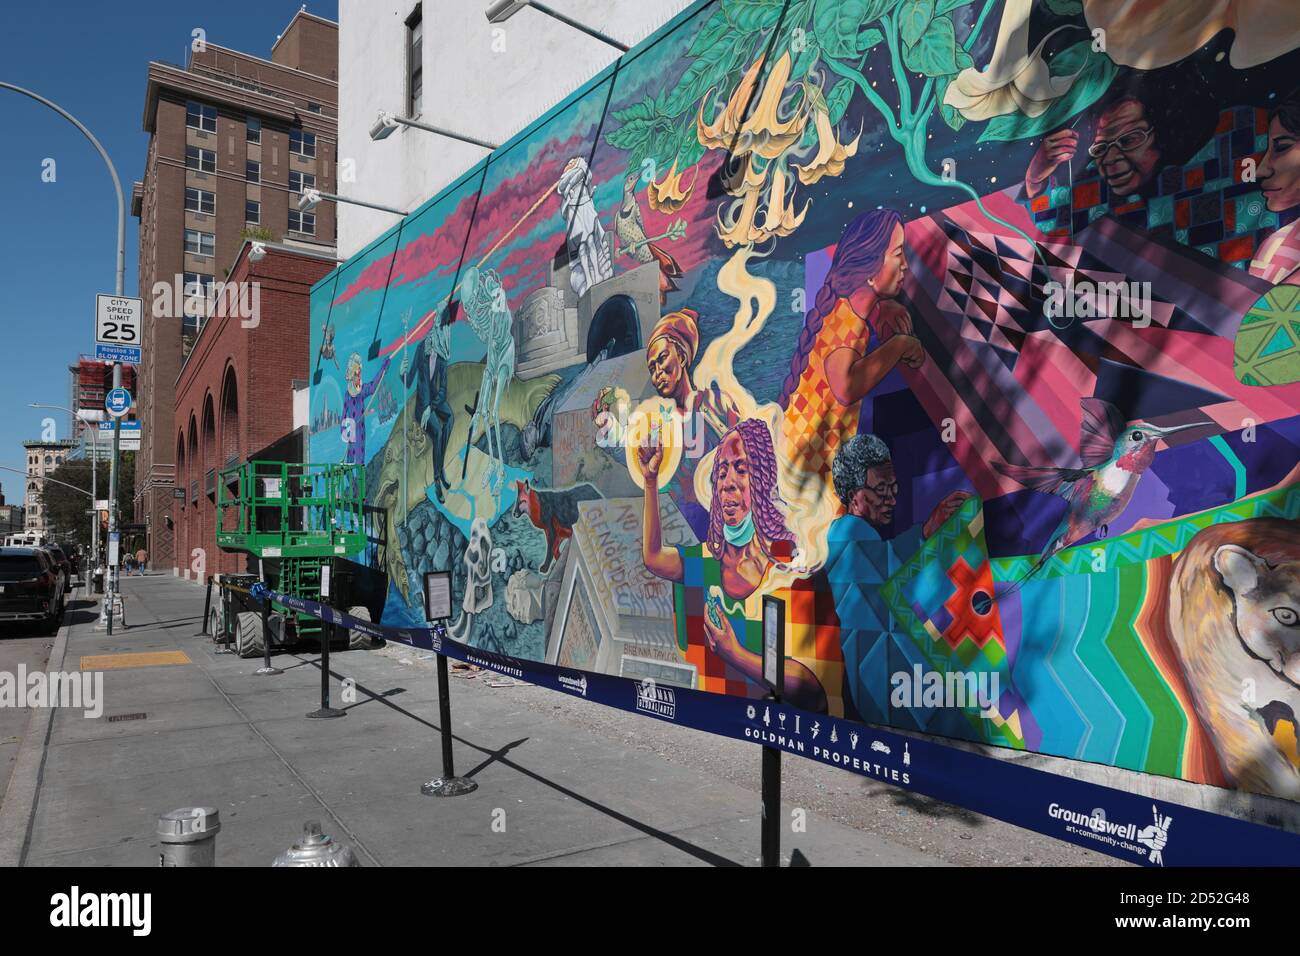 Wandgemälde von Groundswell-Künstlern und Raul Ayala berechtigt, ein Portal auf der Houston Bowery Wandmauer in New York zu öffnen. Stockfoto